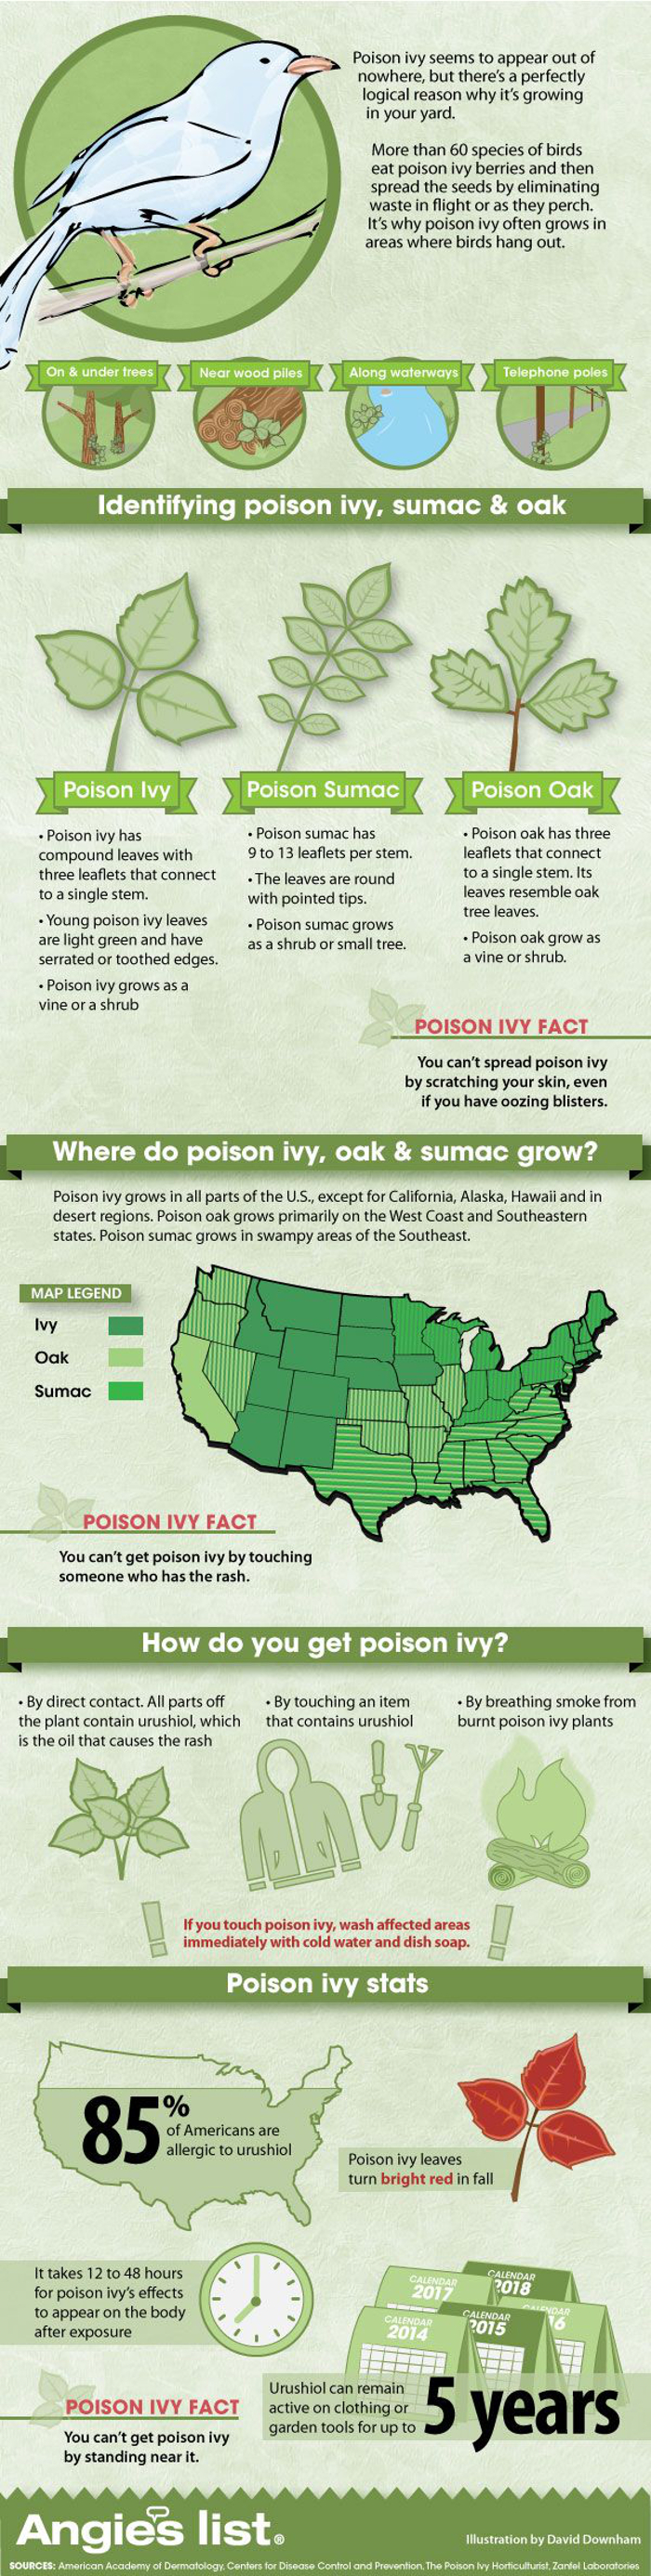 Identifying Poison Ivy Sumac And Oak